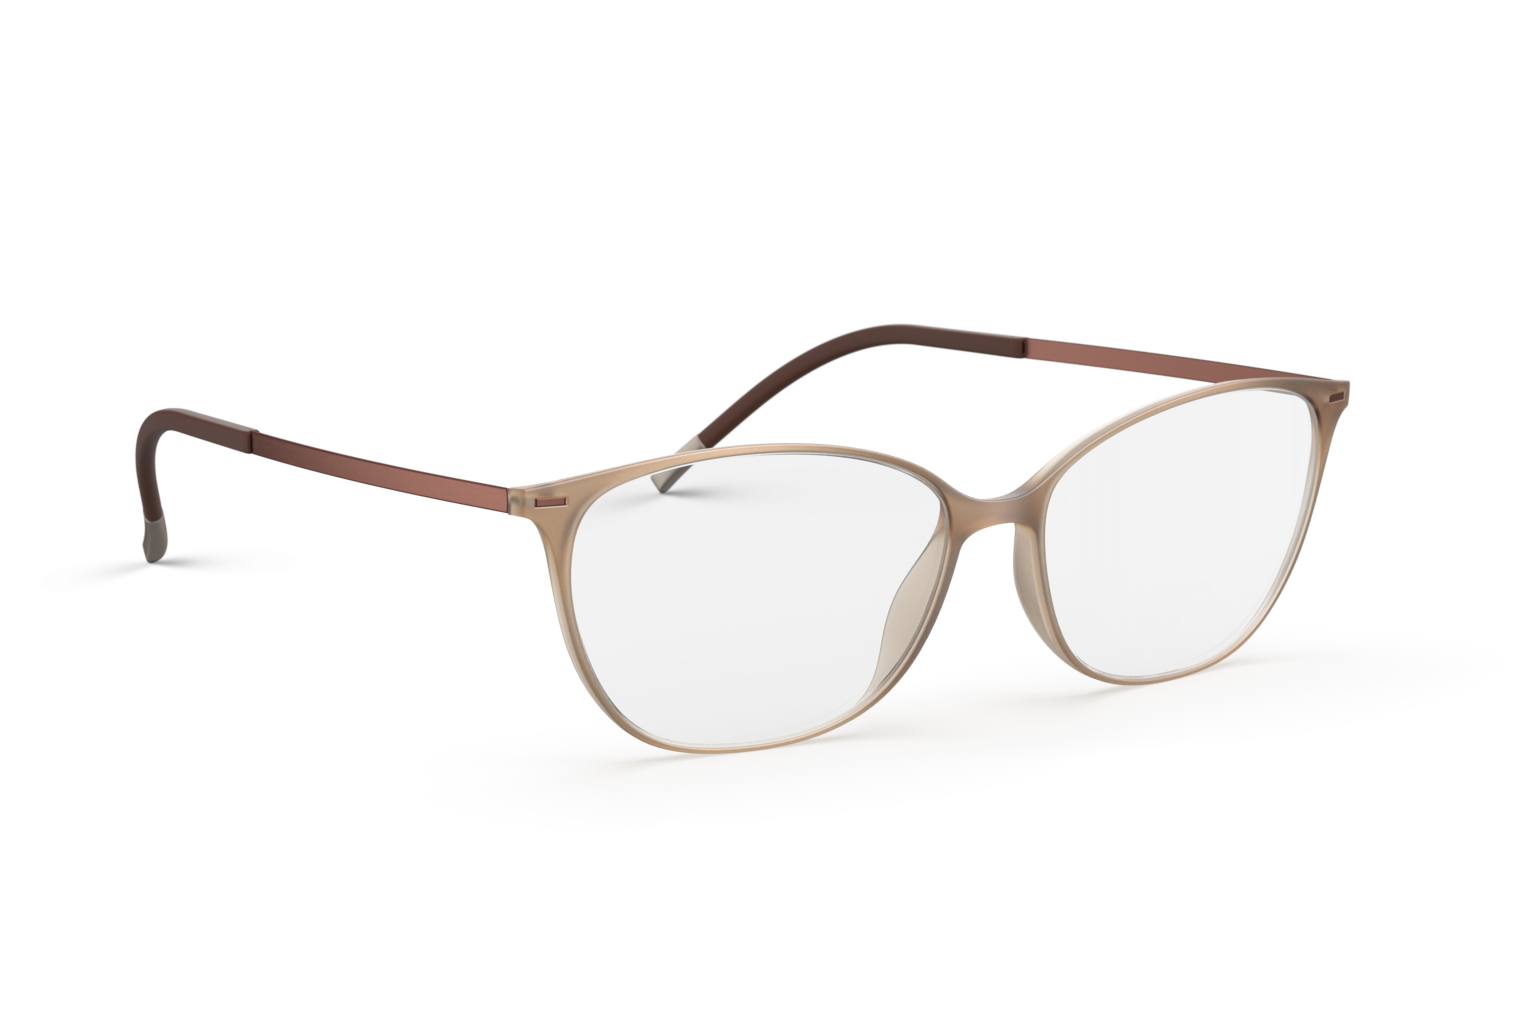 Silhouette 1590 6040 - Oculos de Grau